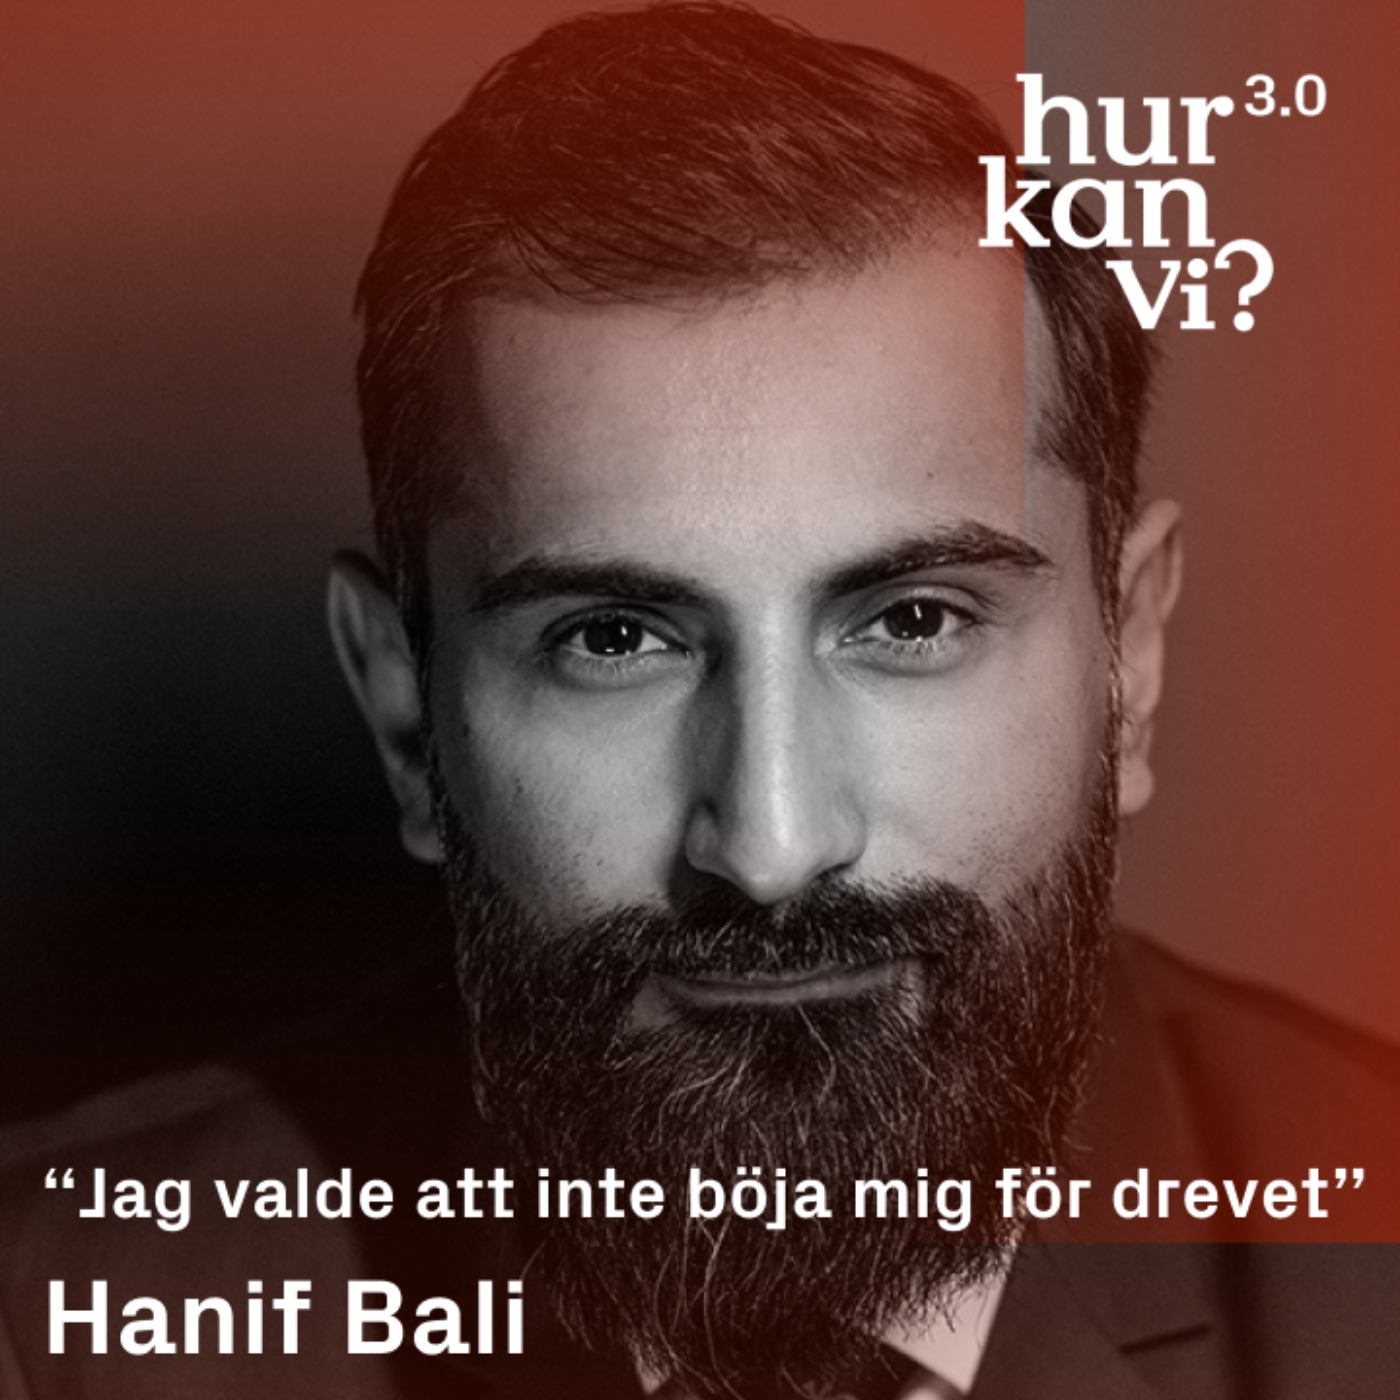 Hanif Bali - DEL 2 - “Jag valde att inte böja mig för drevet”